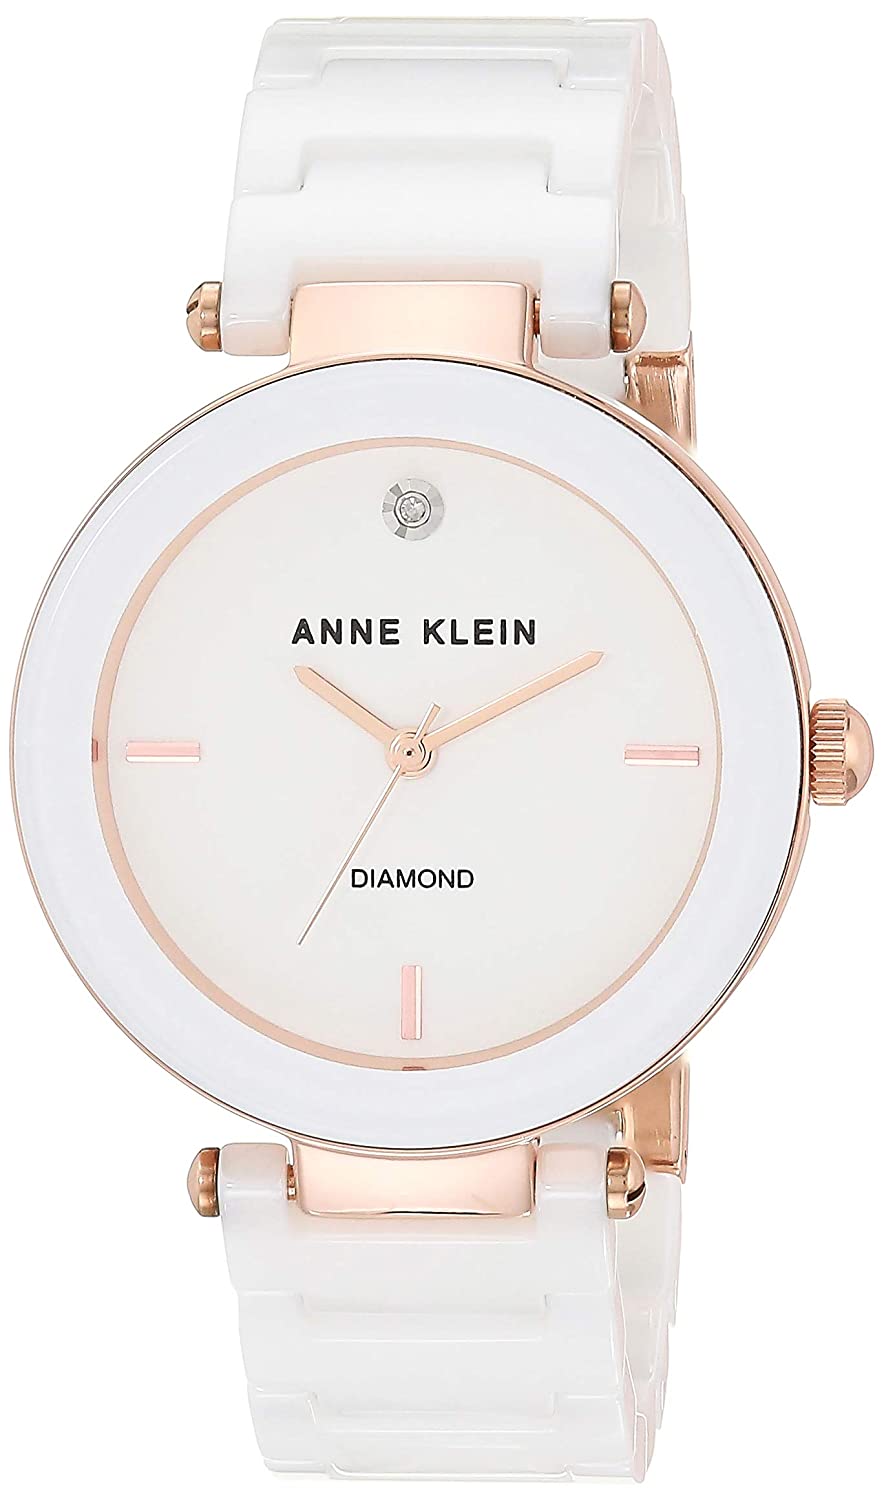 Наручные часы женские Anne Klein AK/1018RGTN белые